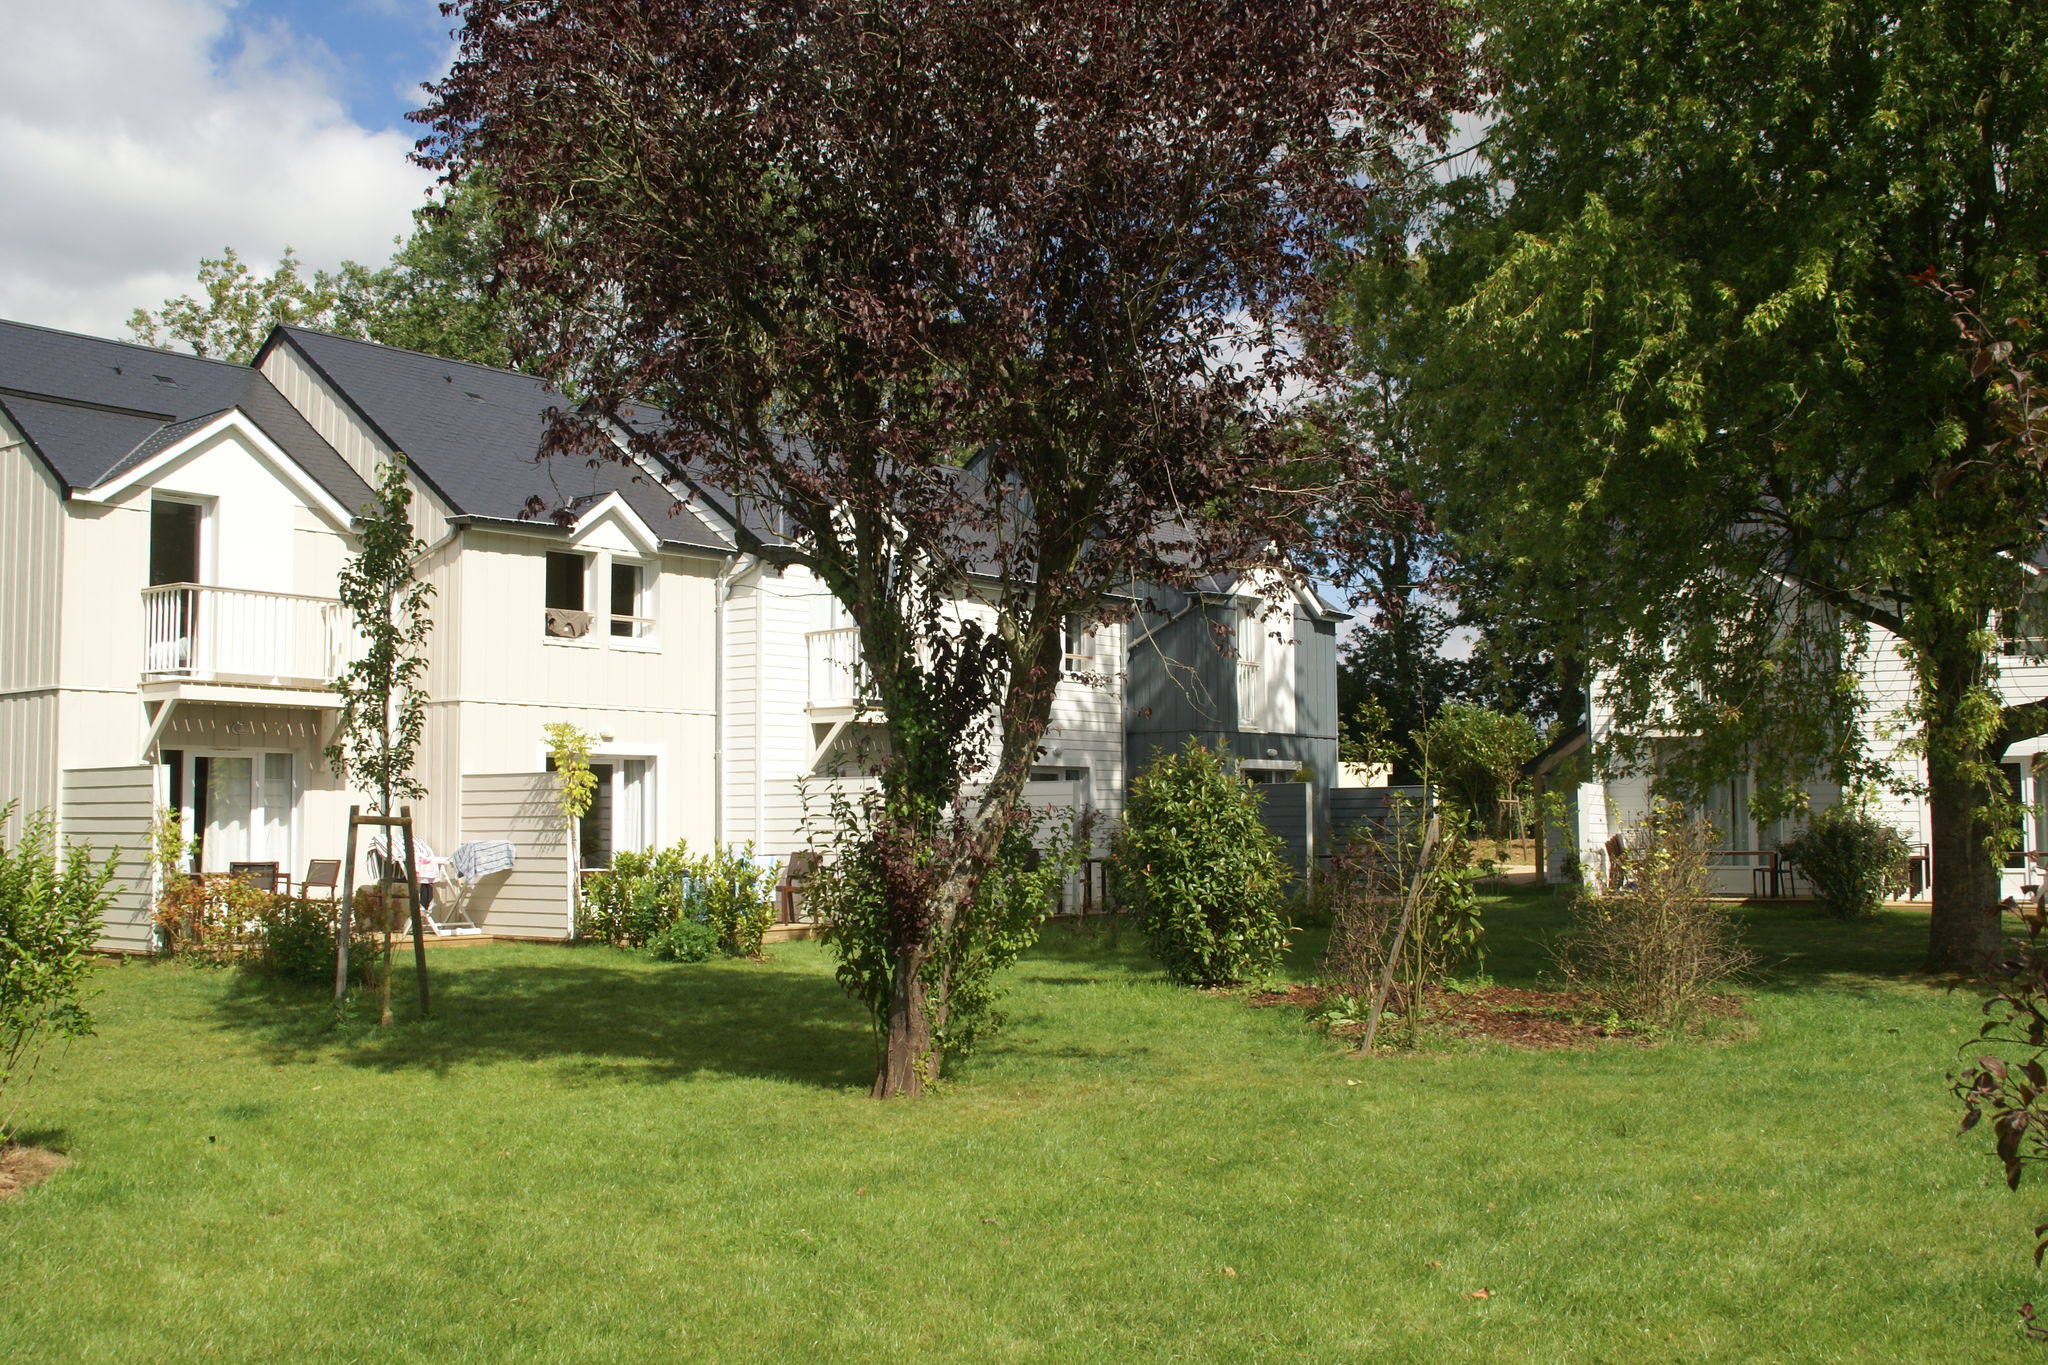 Belle maison de style normand près de Deauville et Honfleur